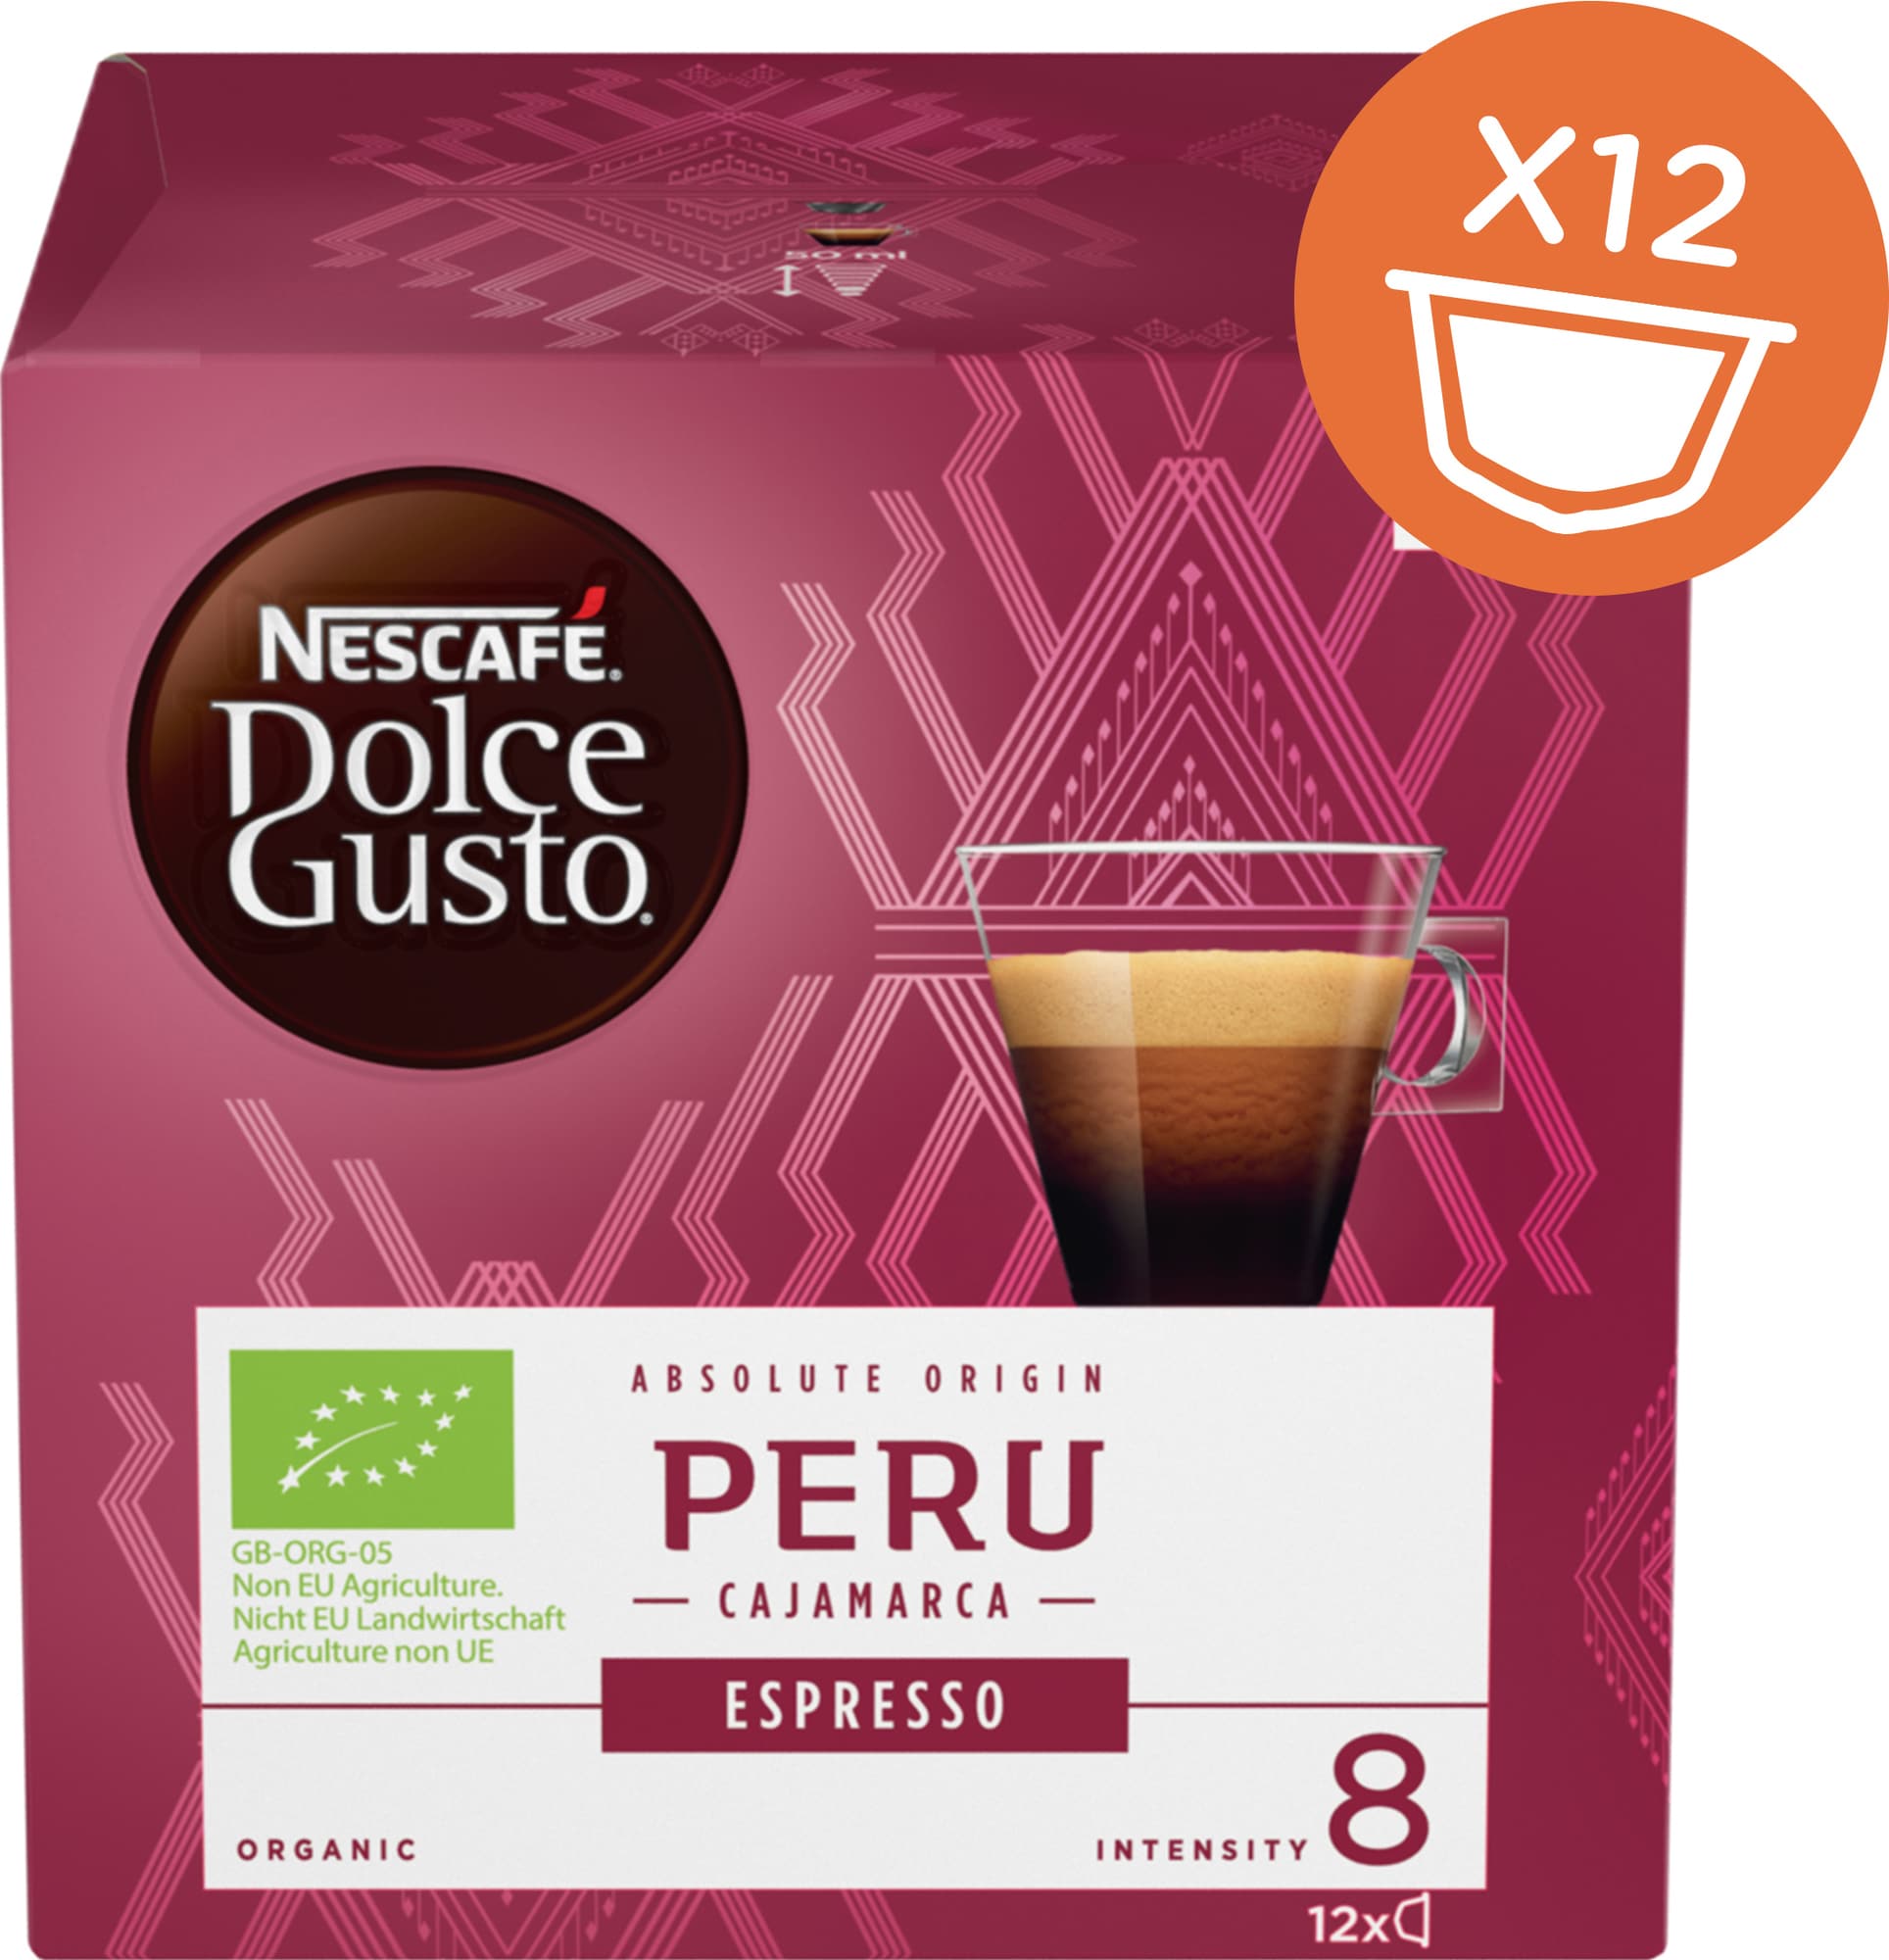 Nescafe Dolce Gusto Peru Espresso Organic